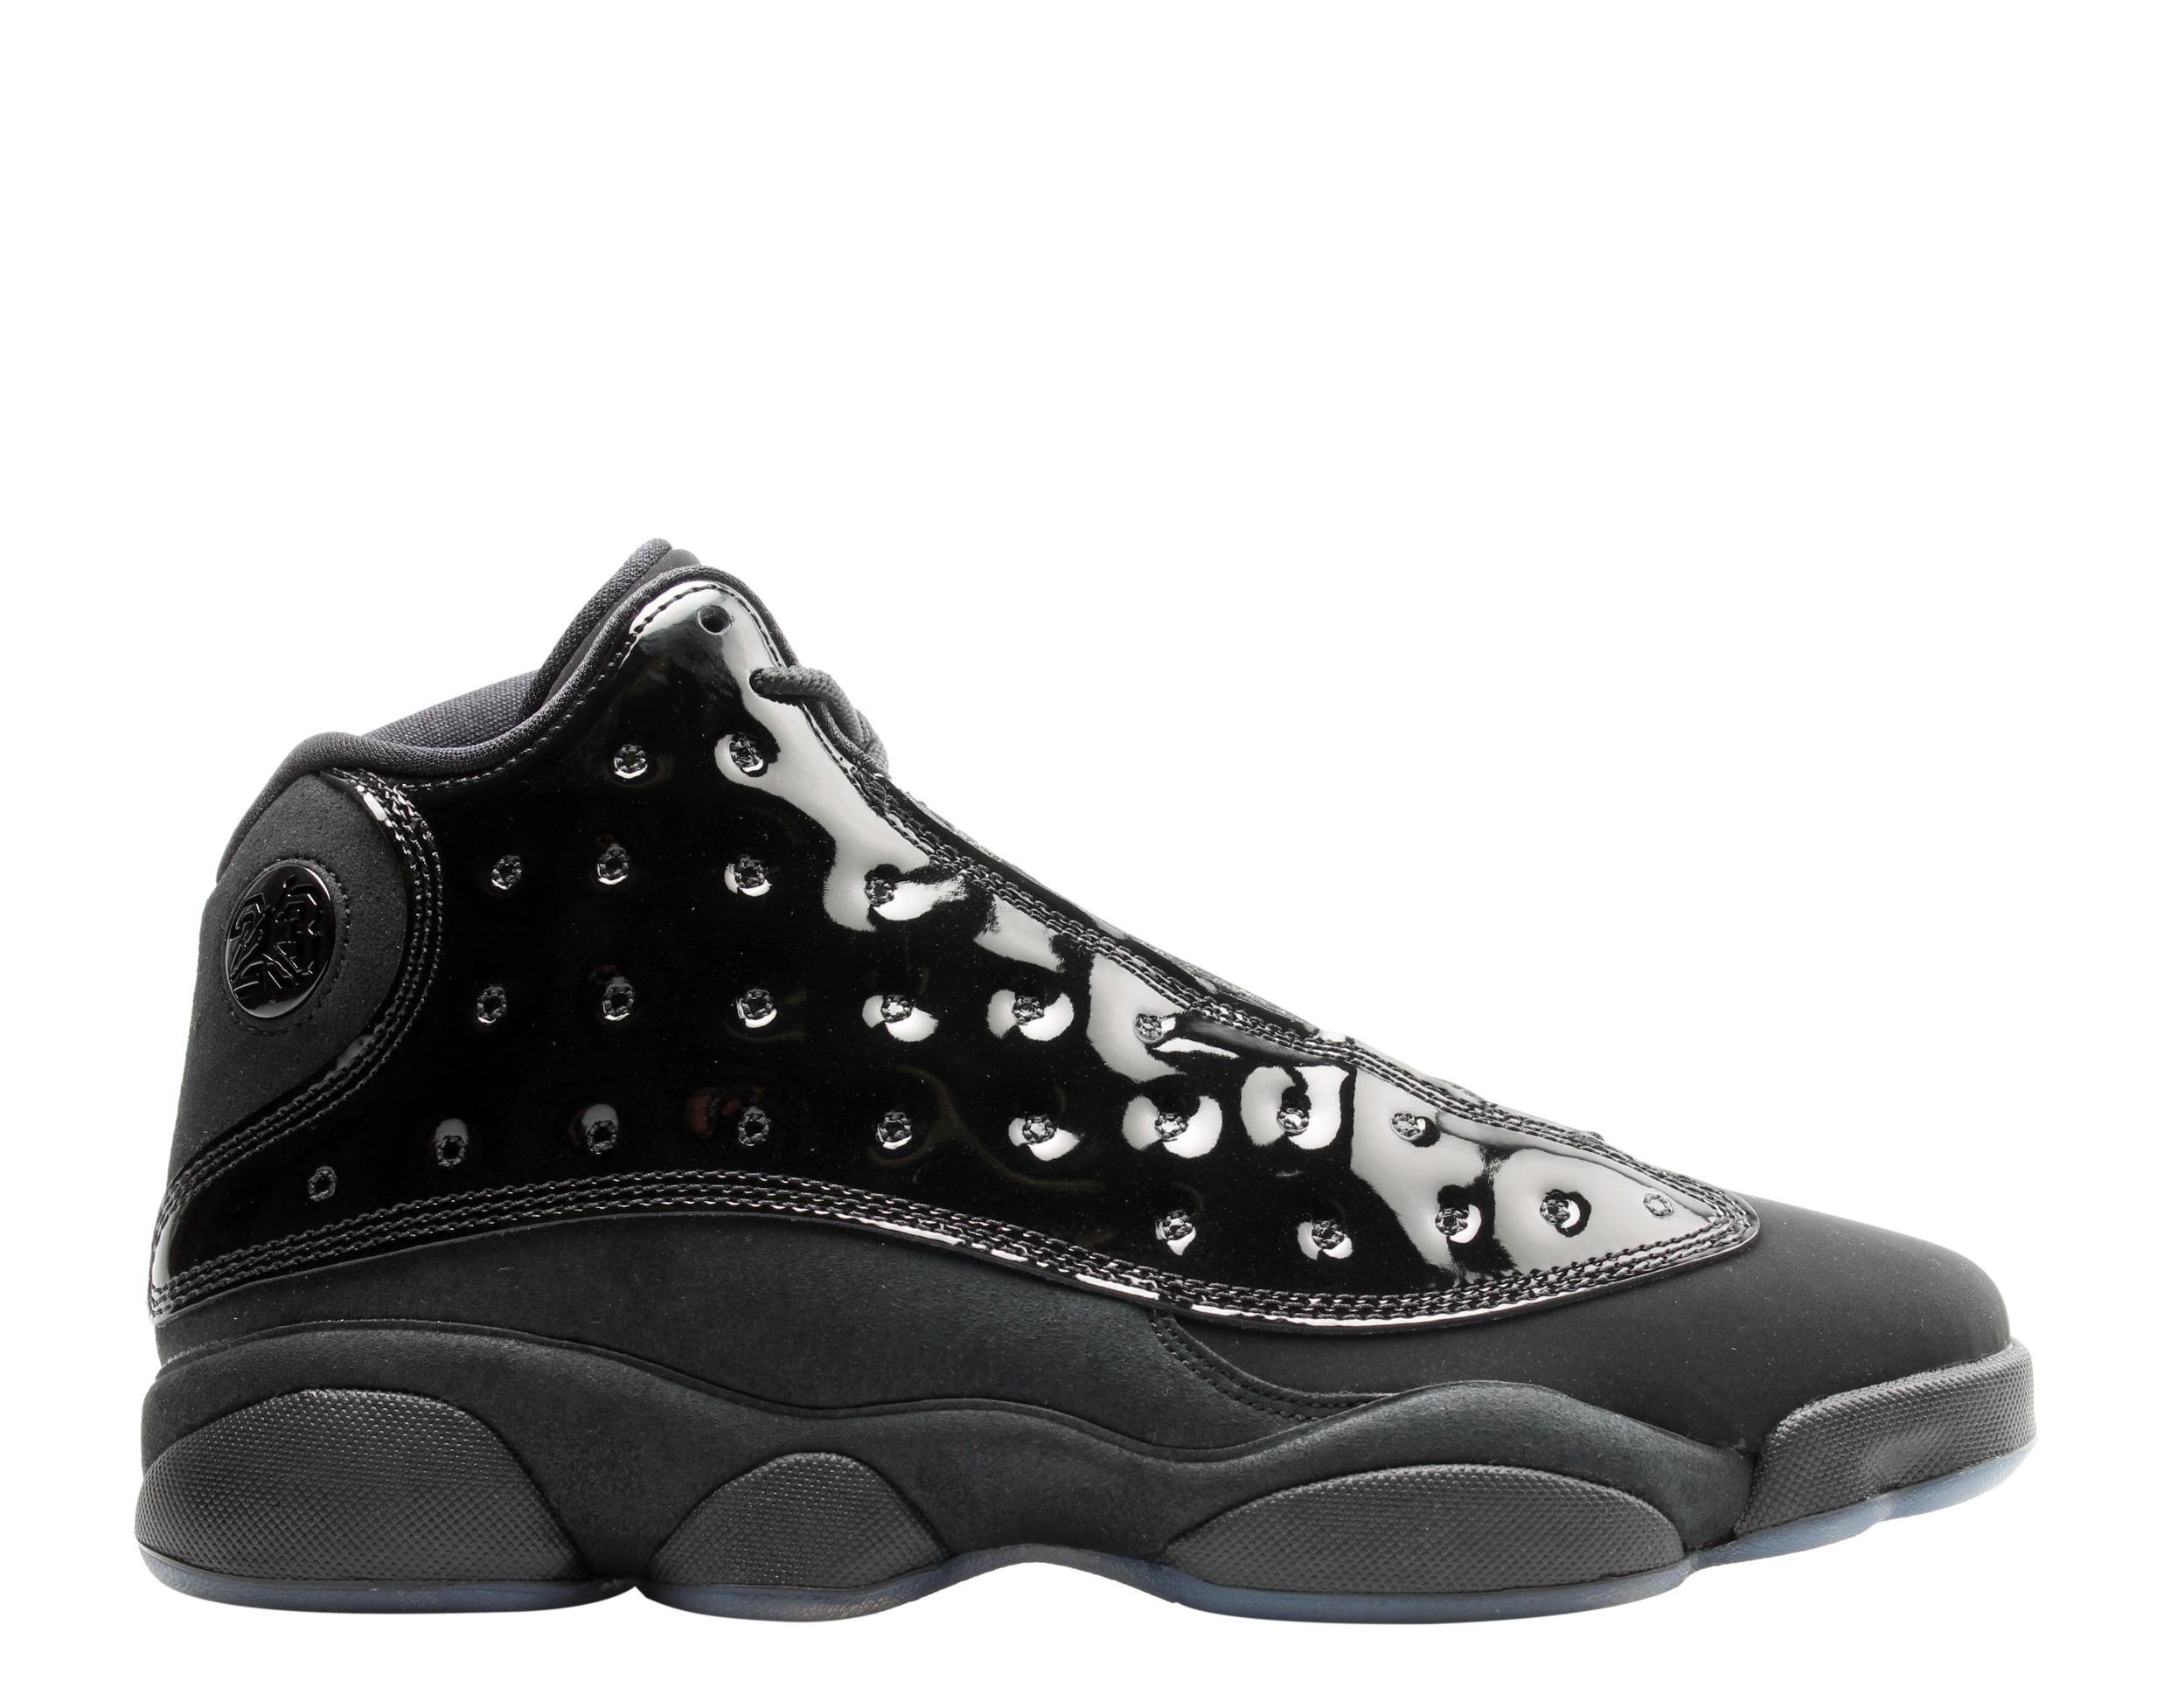 Nike Air Jordan 13 Retro Black Cap and Gown Men's Basketball Shoes 414571-012 - image 2 of 6